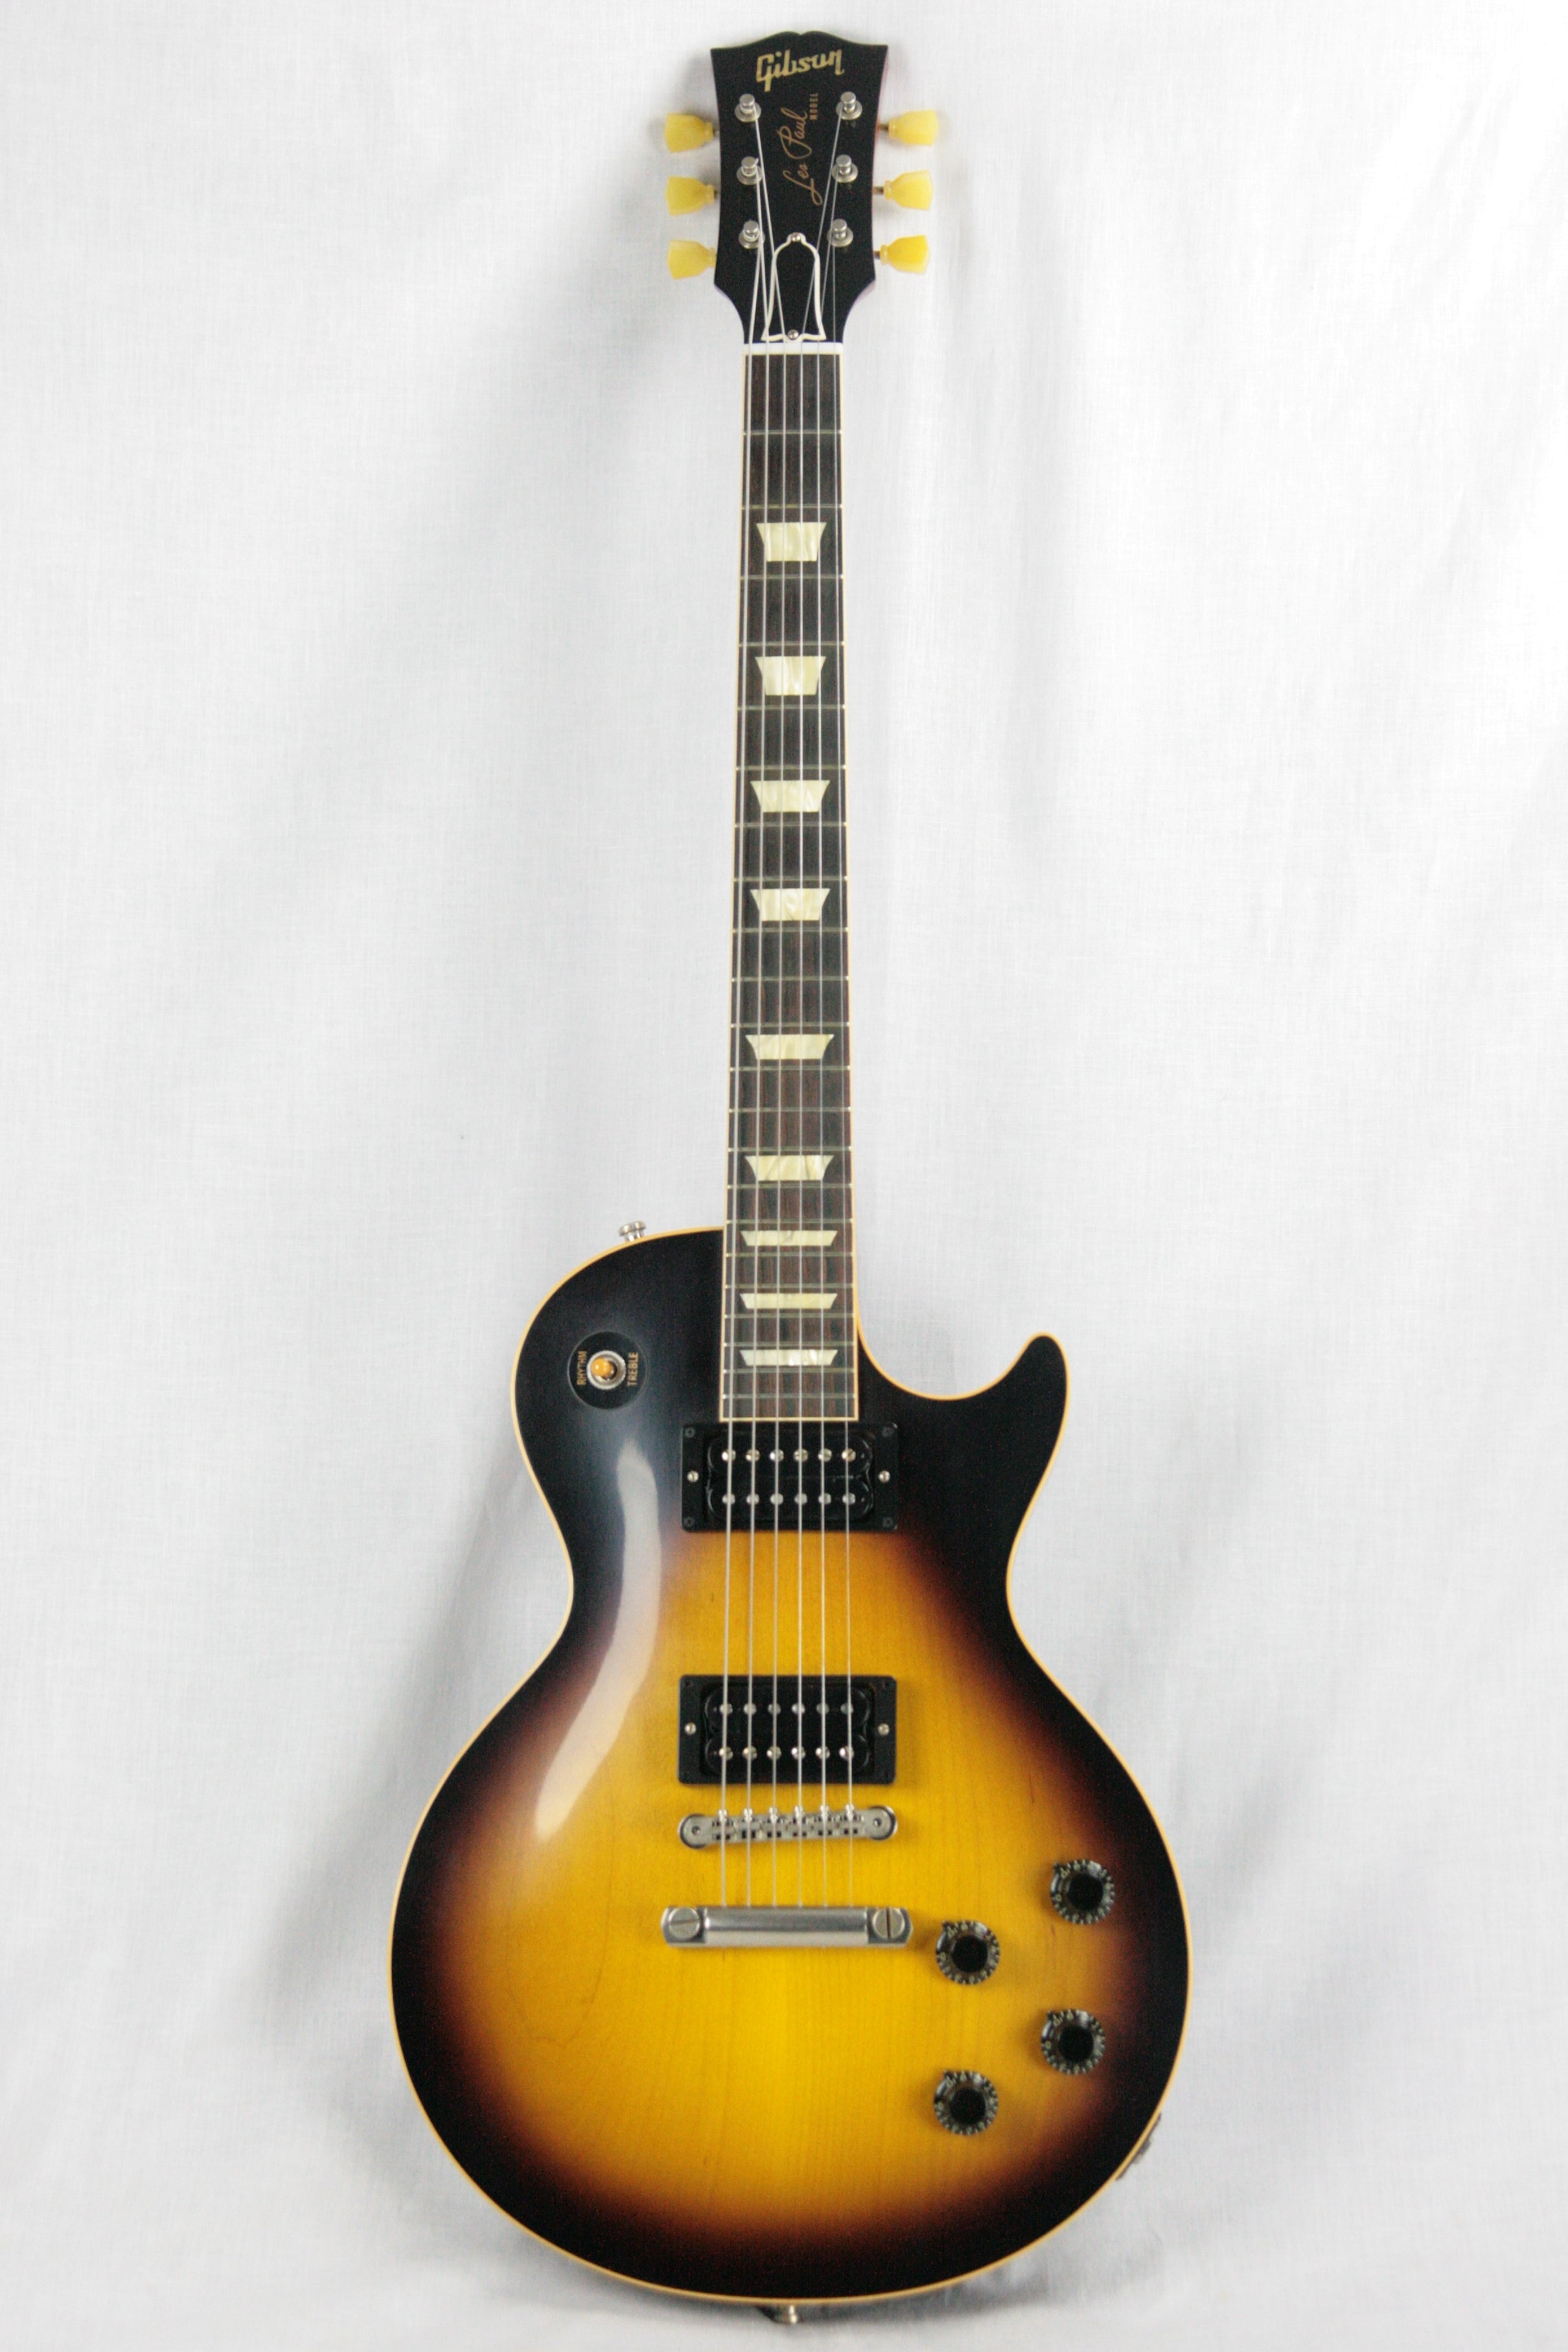 *SOLD*  2018 Gibson Custom Slash Signed 1958 Les Paul Standard BRAZILIAN DREAM Rosewood Reissue